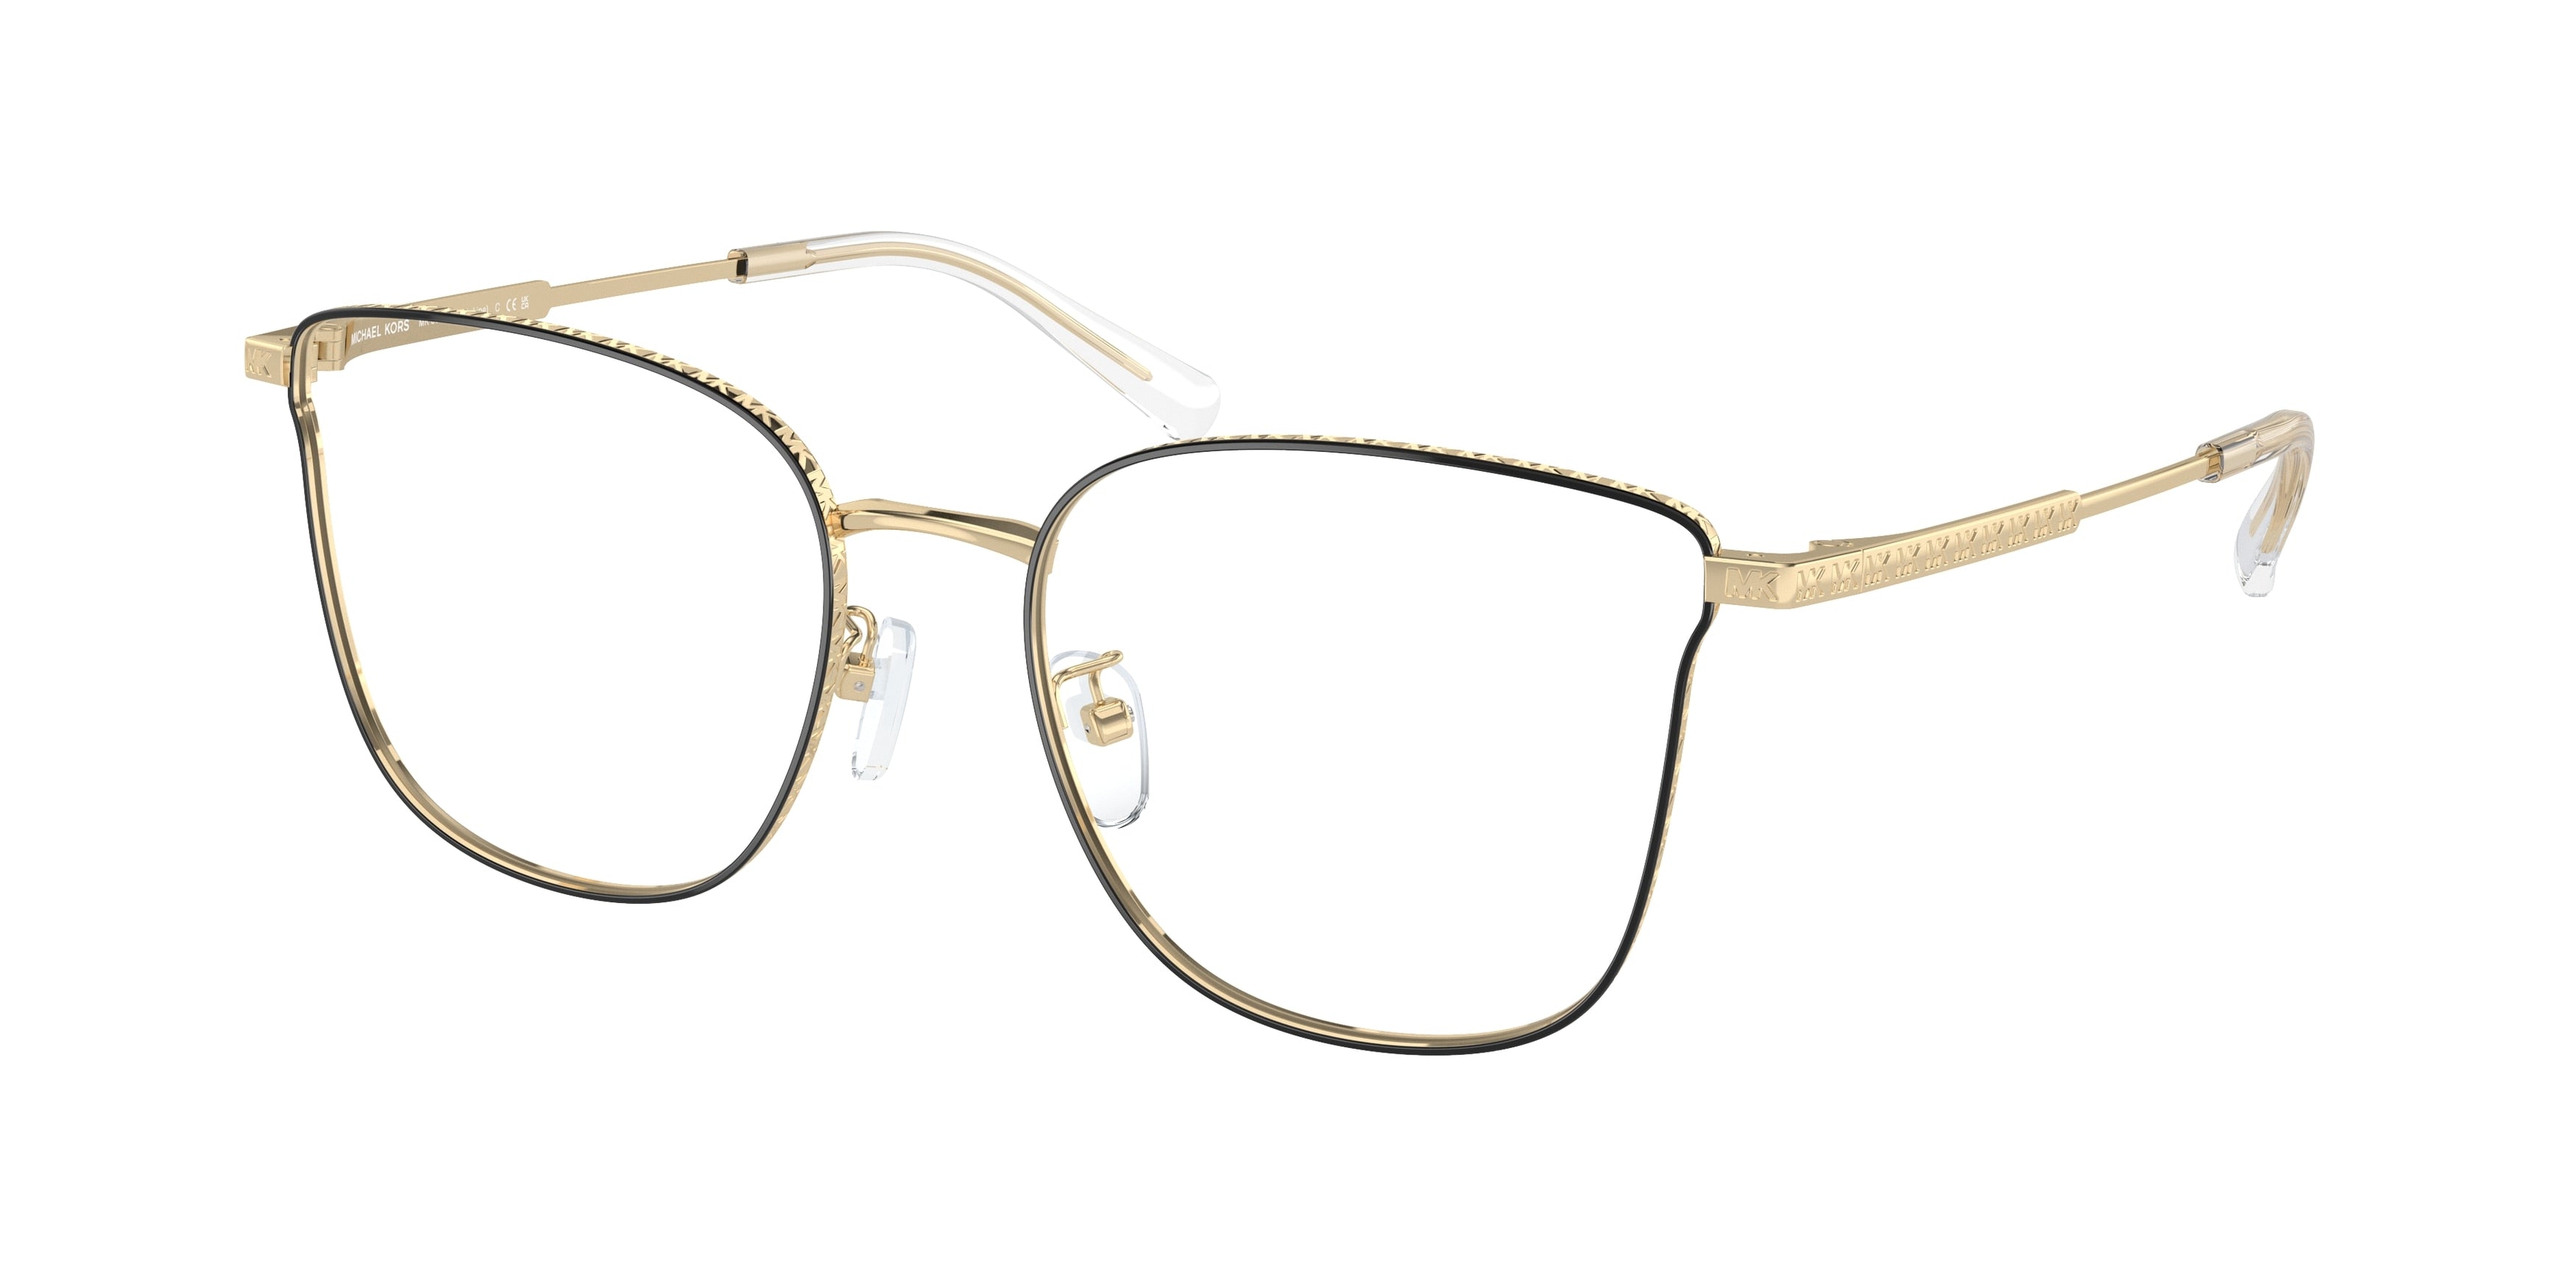 Michael Kors KOH LIPE MK3073D Cat Eye Eyeglasses  1014-Light Gold 55-145-18 - Color Map Gold